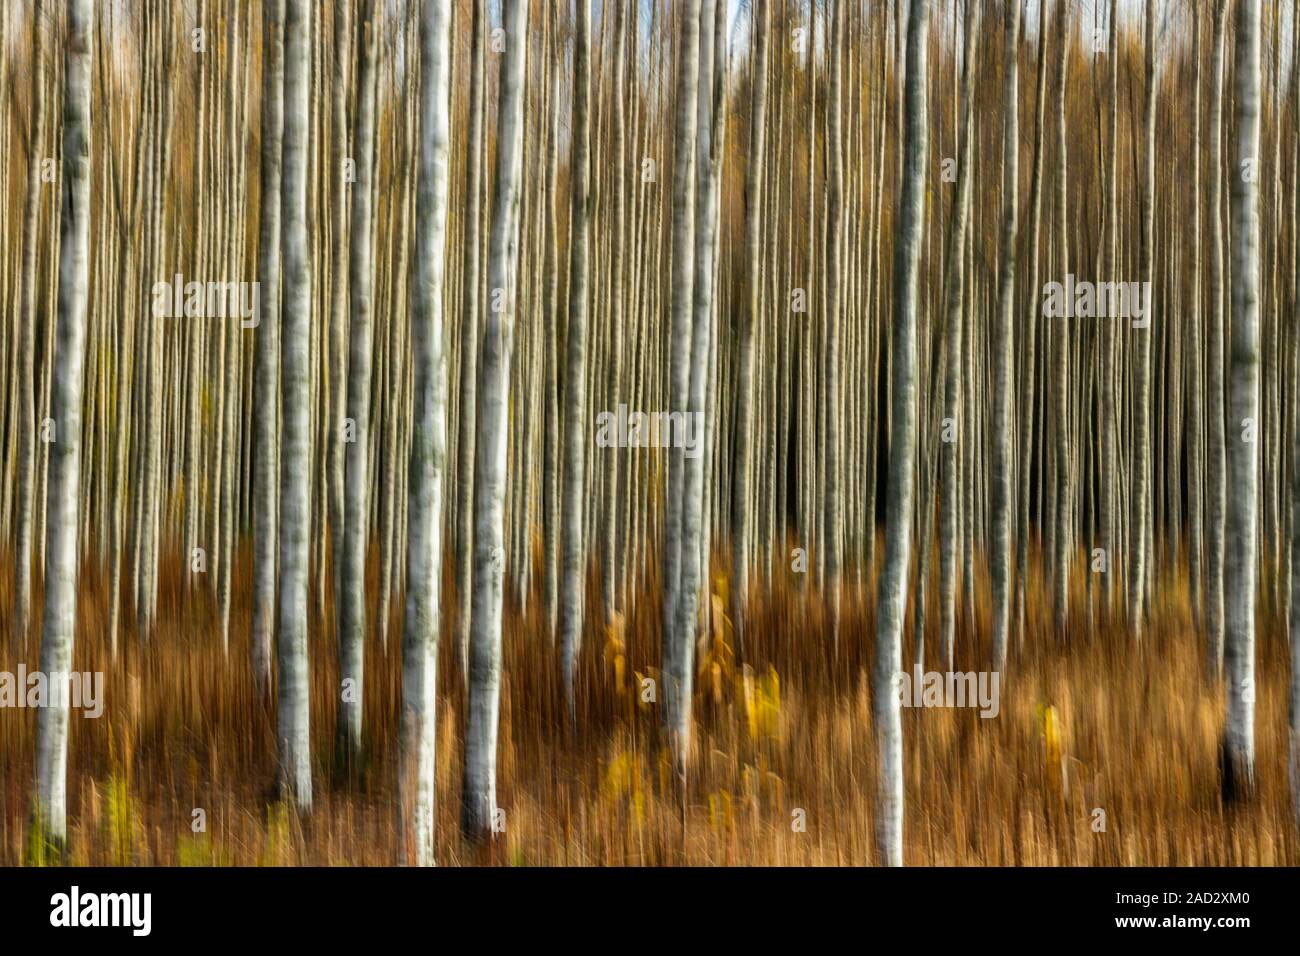 Abstrakte verschwommenes Foto von Birch Grove im Herbst. Bewegungsunschärfe. Stockfoto